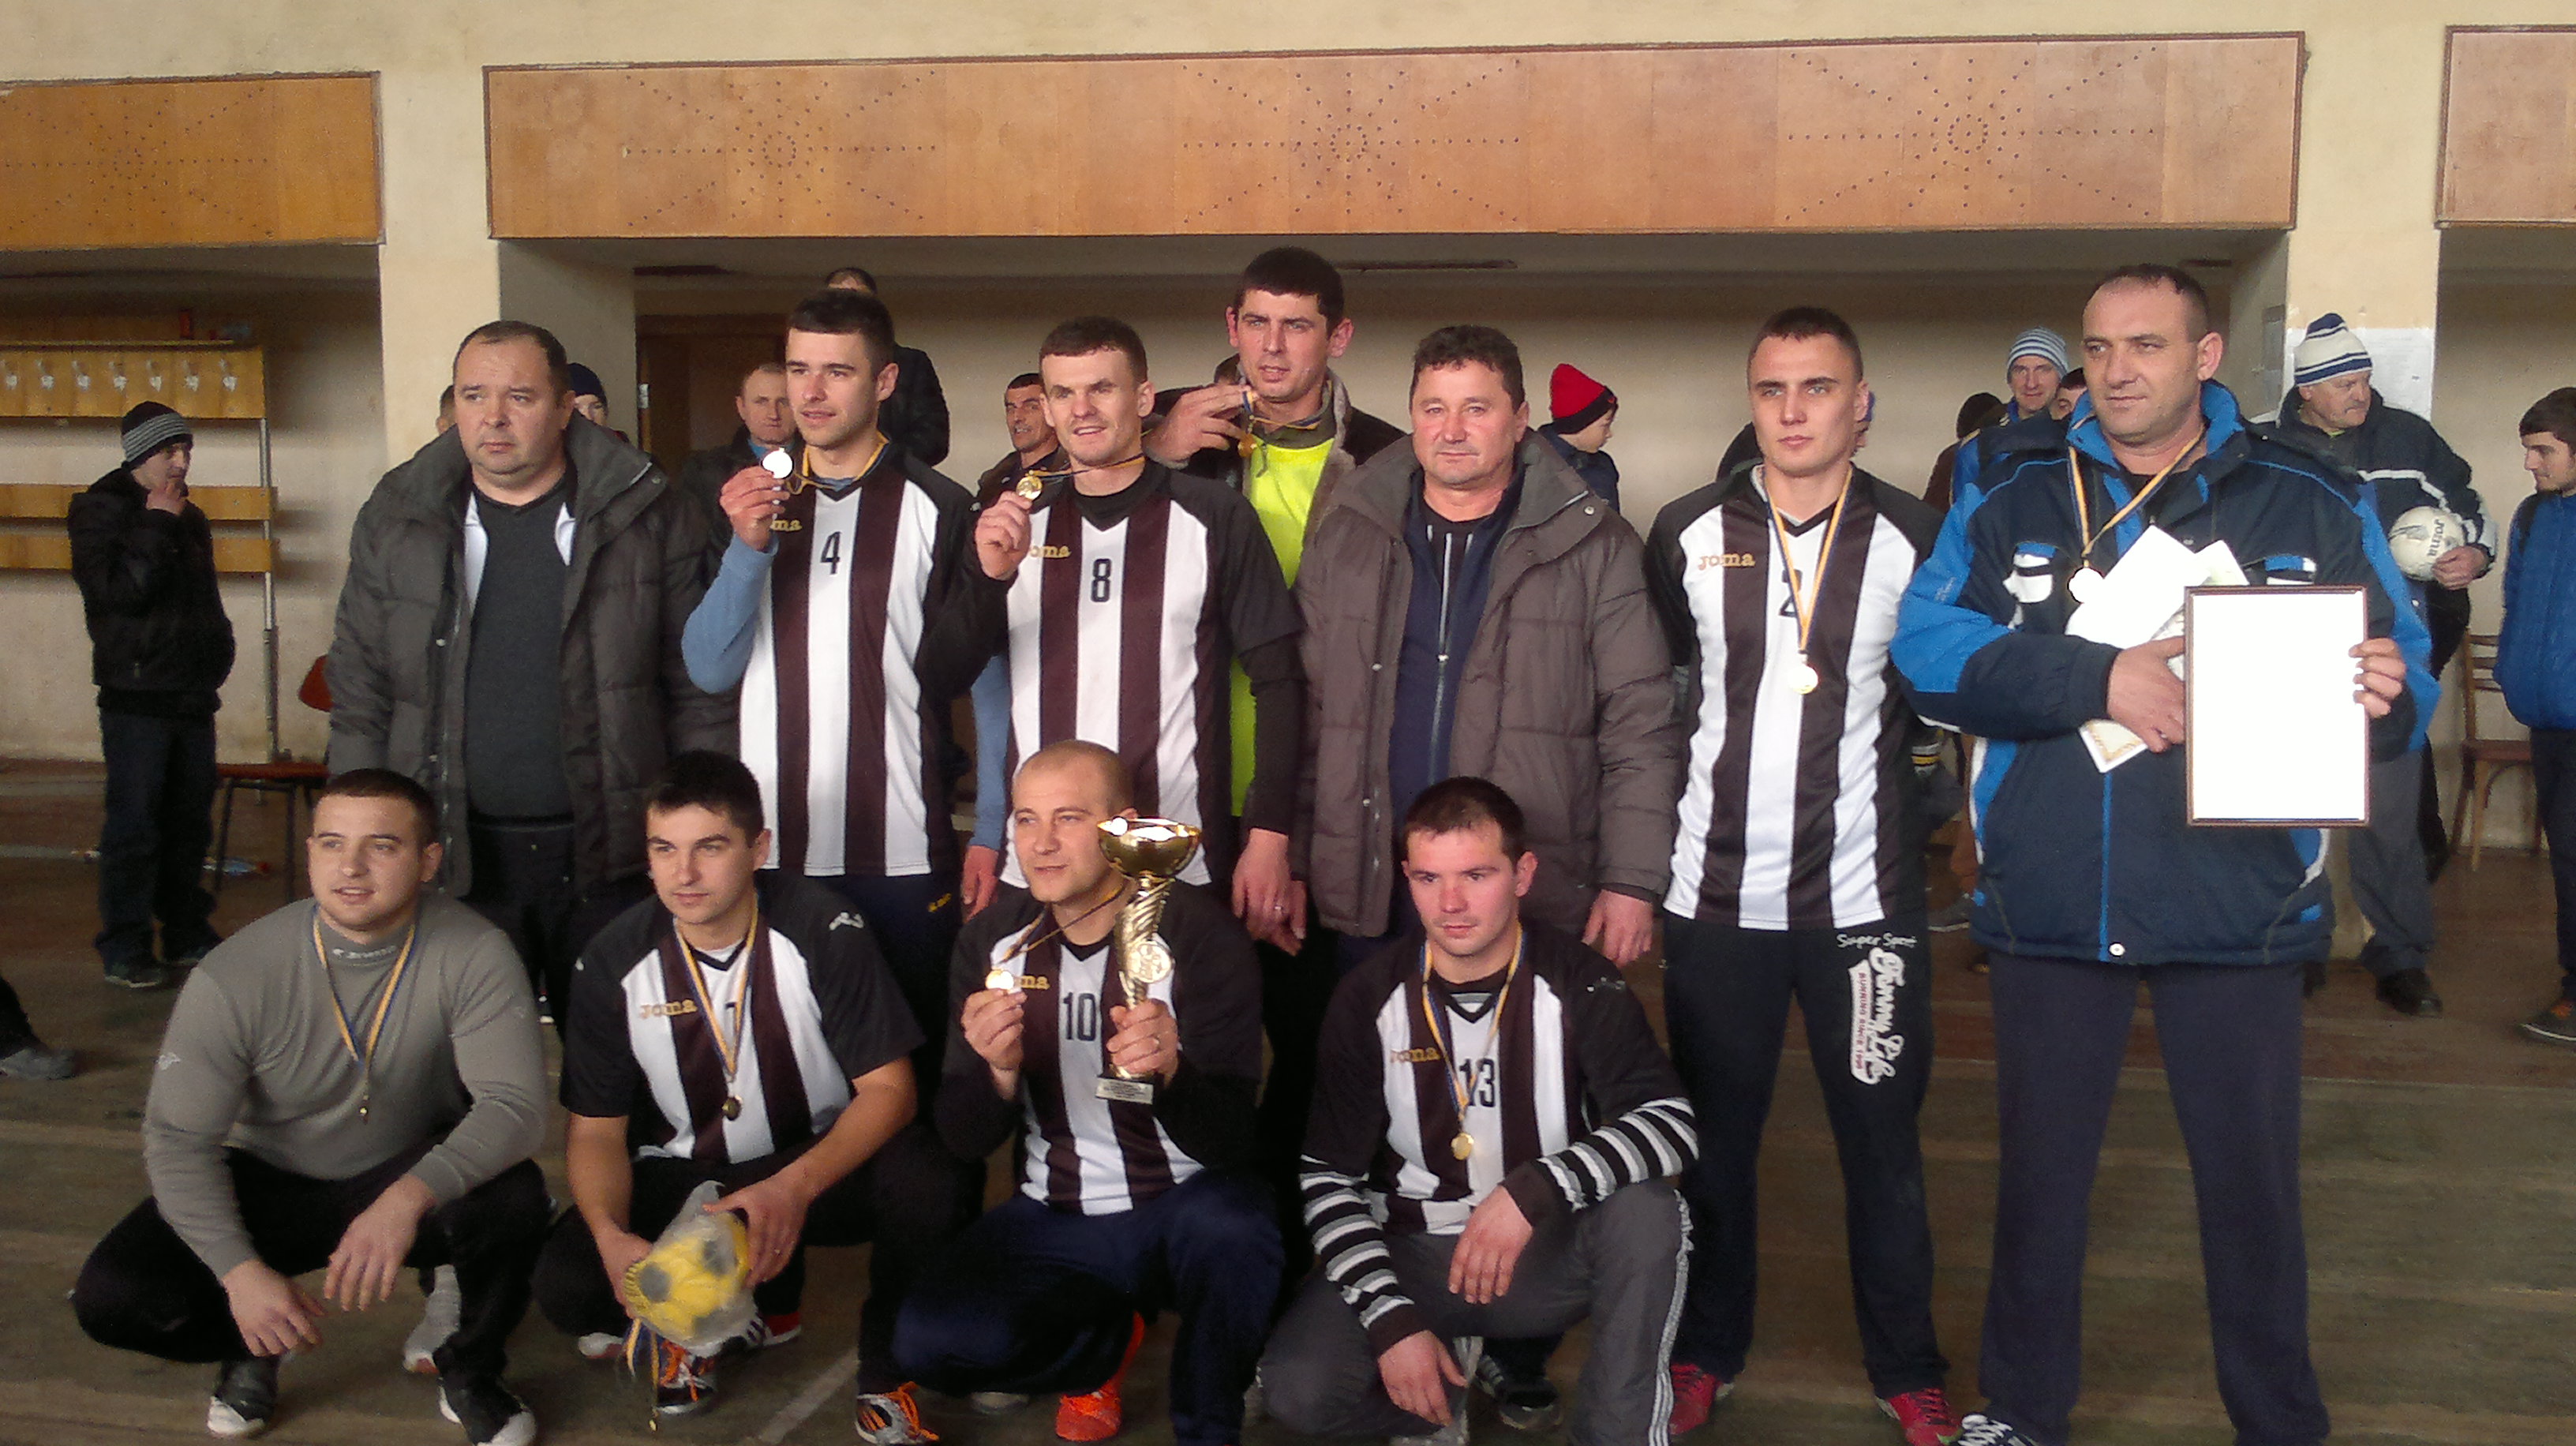 17 команд Виноградівського району взяли участь у турнірі з міні-футболу, що пройшов на базі спортивного комплексу «Тиса» у селі Пийтерфолво.